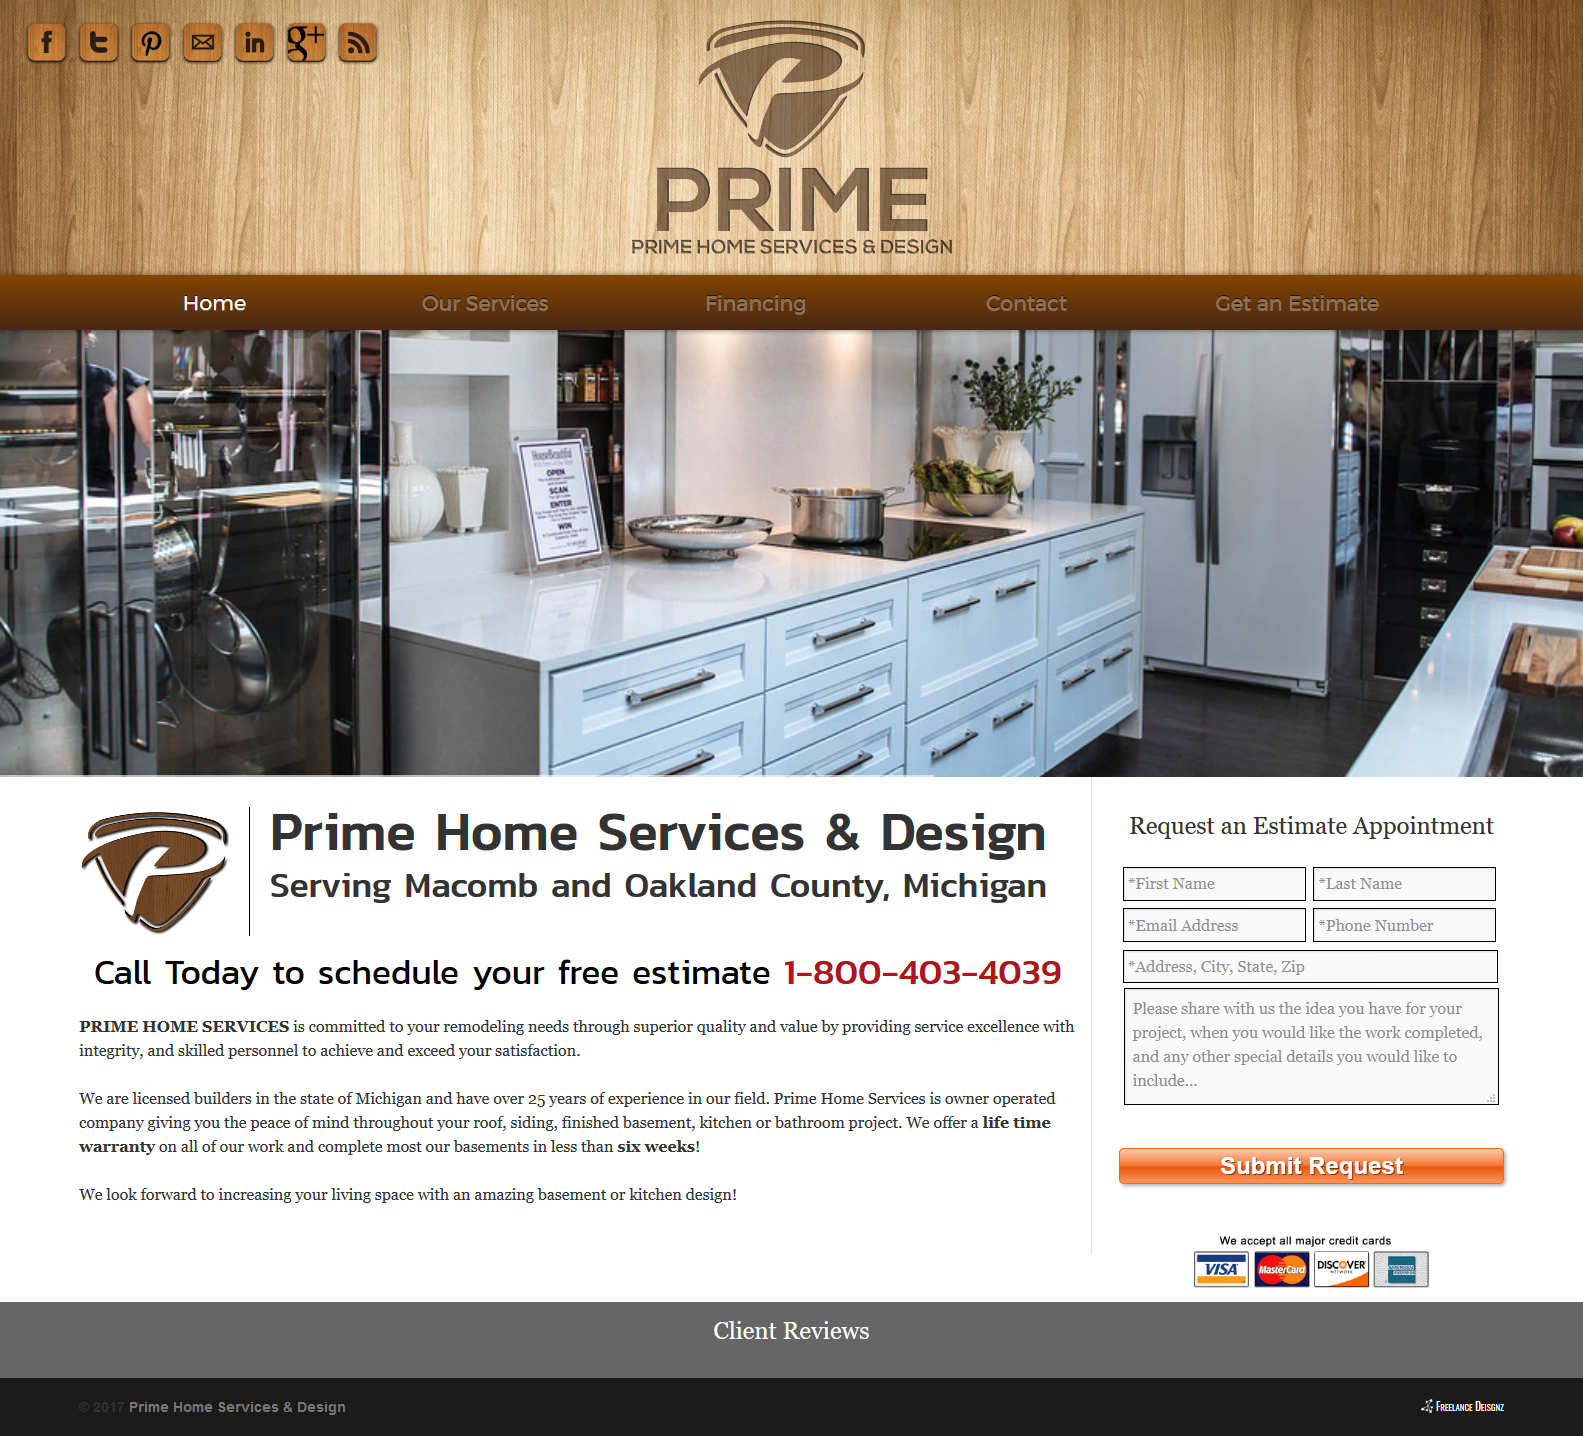 Prime Home Services & Design